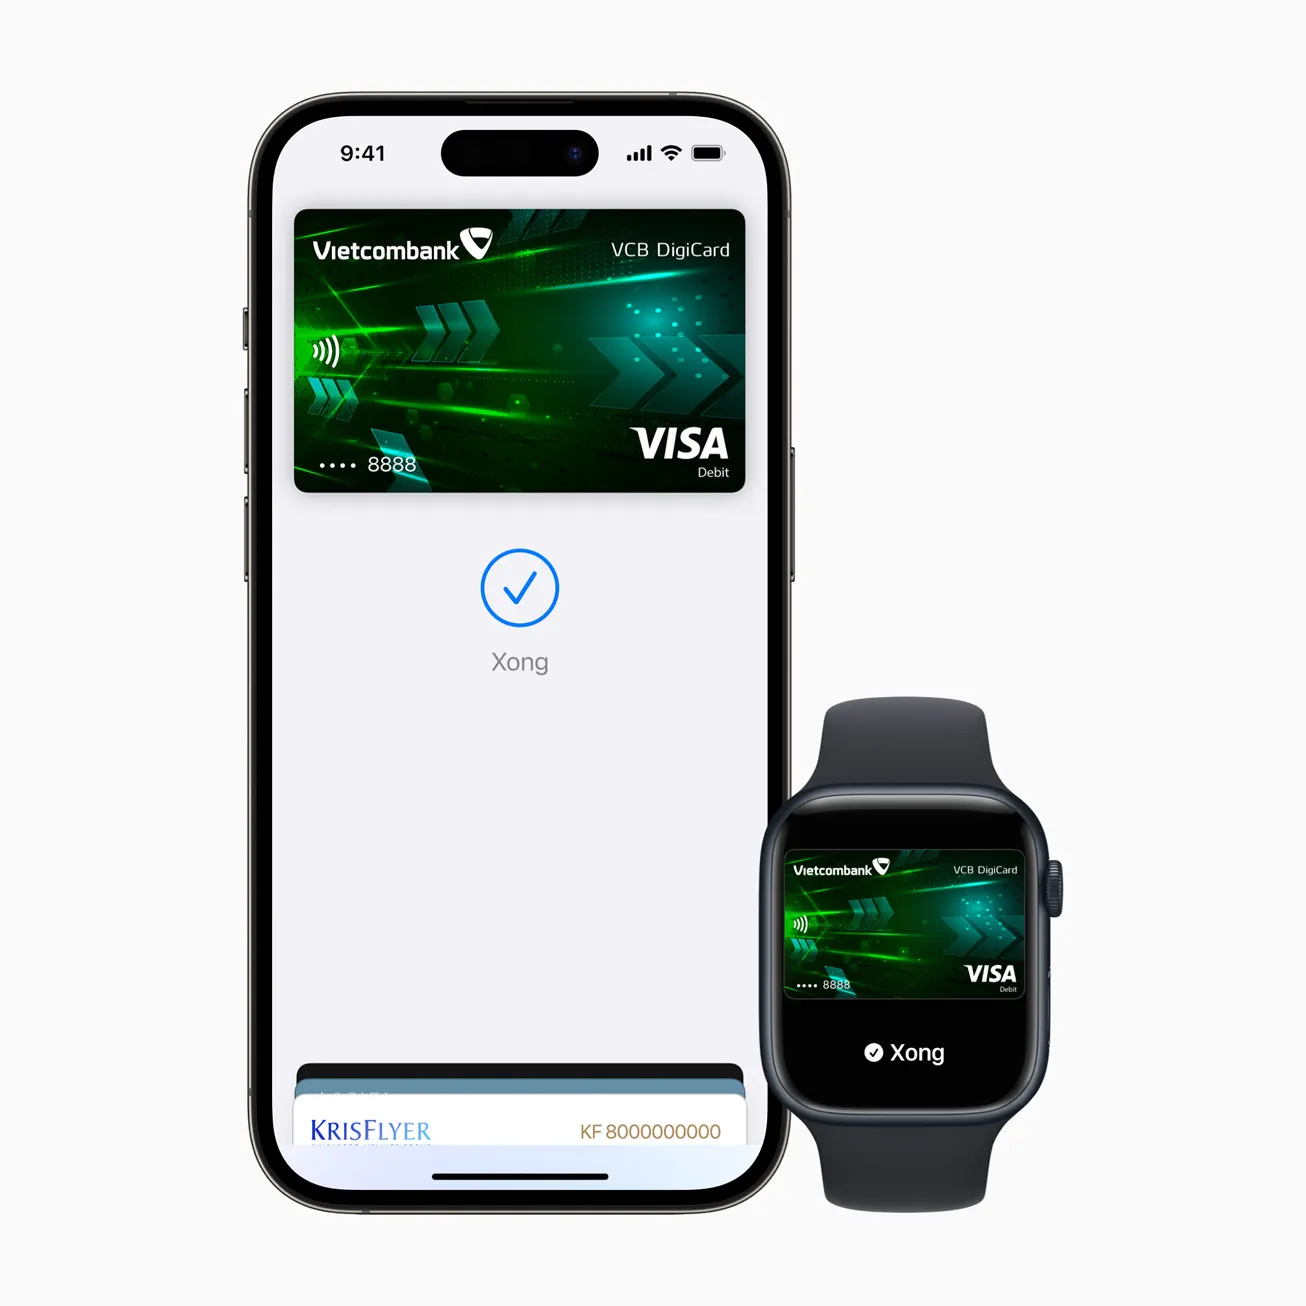 Visa giới thiệu Apple Pay đến chủ thẻ tại Việt Nam